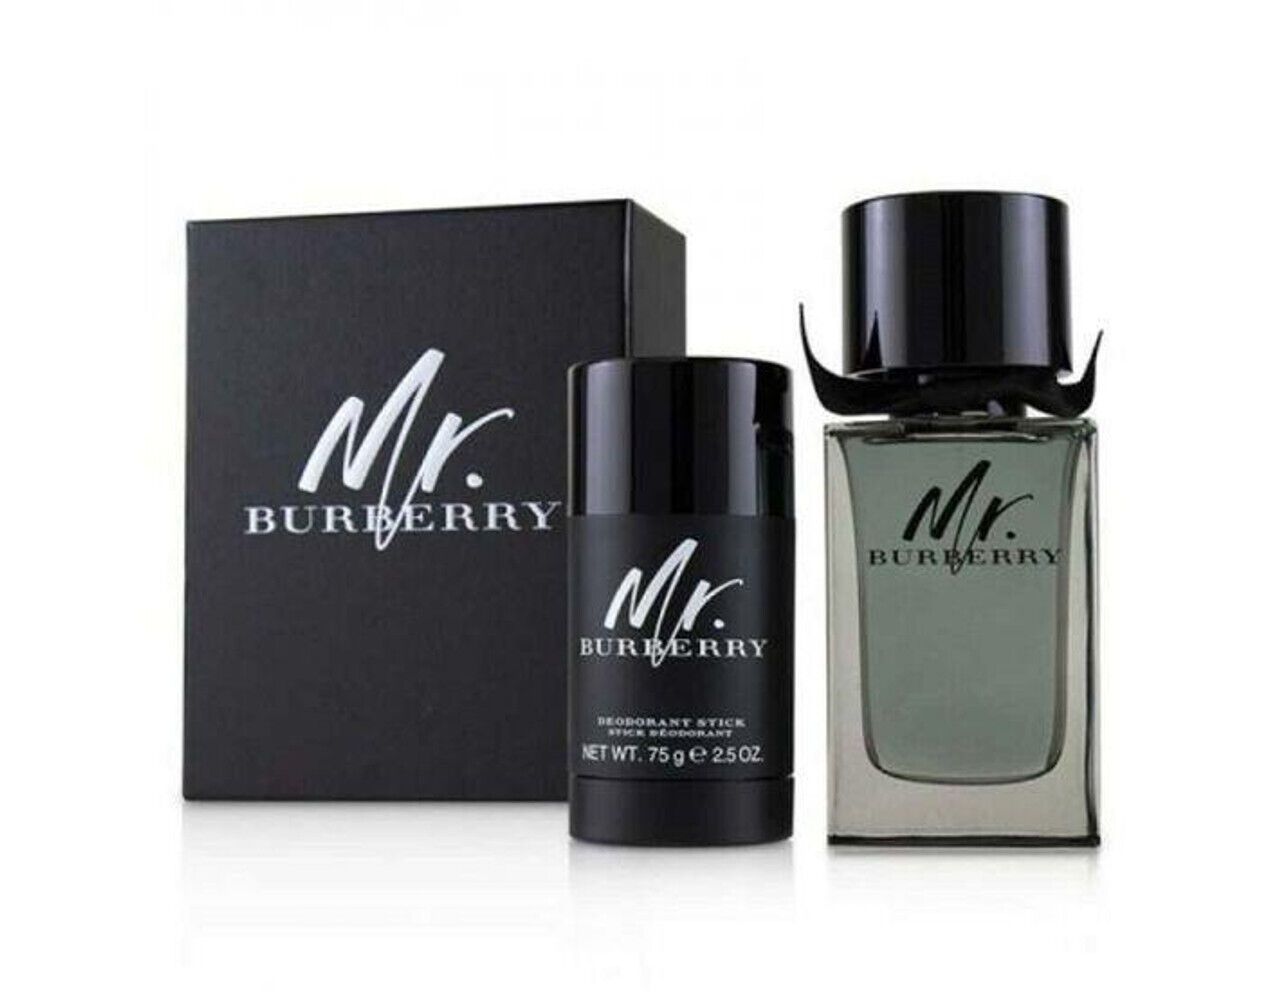 Burberry Mr Burberry Eau De Toilette 2 Piece Gift Set for Men 100ml at Ratans Online Shop - Perfumes Wholesale and Retailer Fragrance